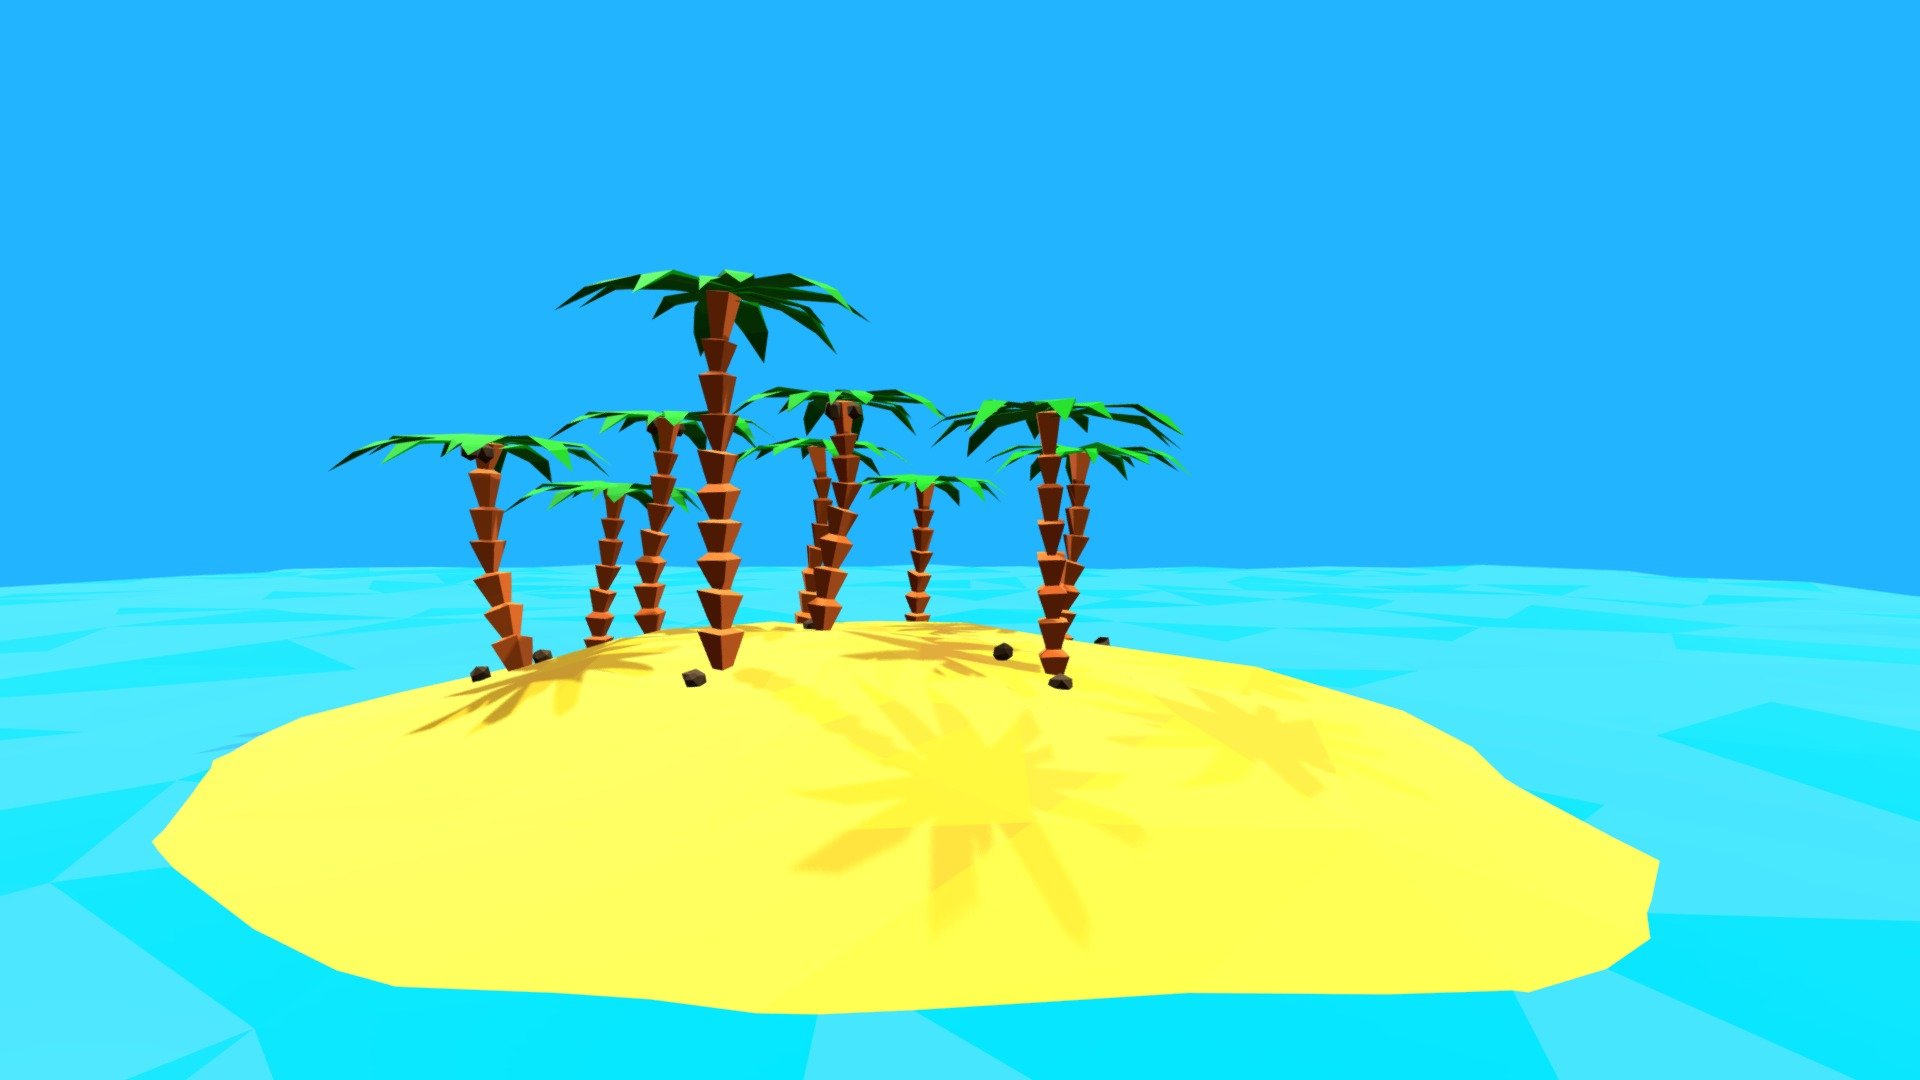 Palm Island | Low Poly | David Kiefer - 3D model by david.kiefer ...